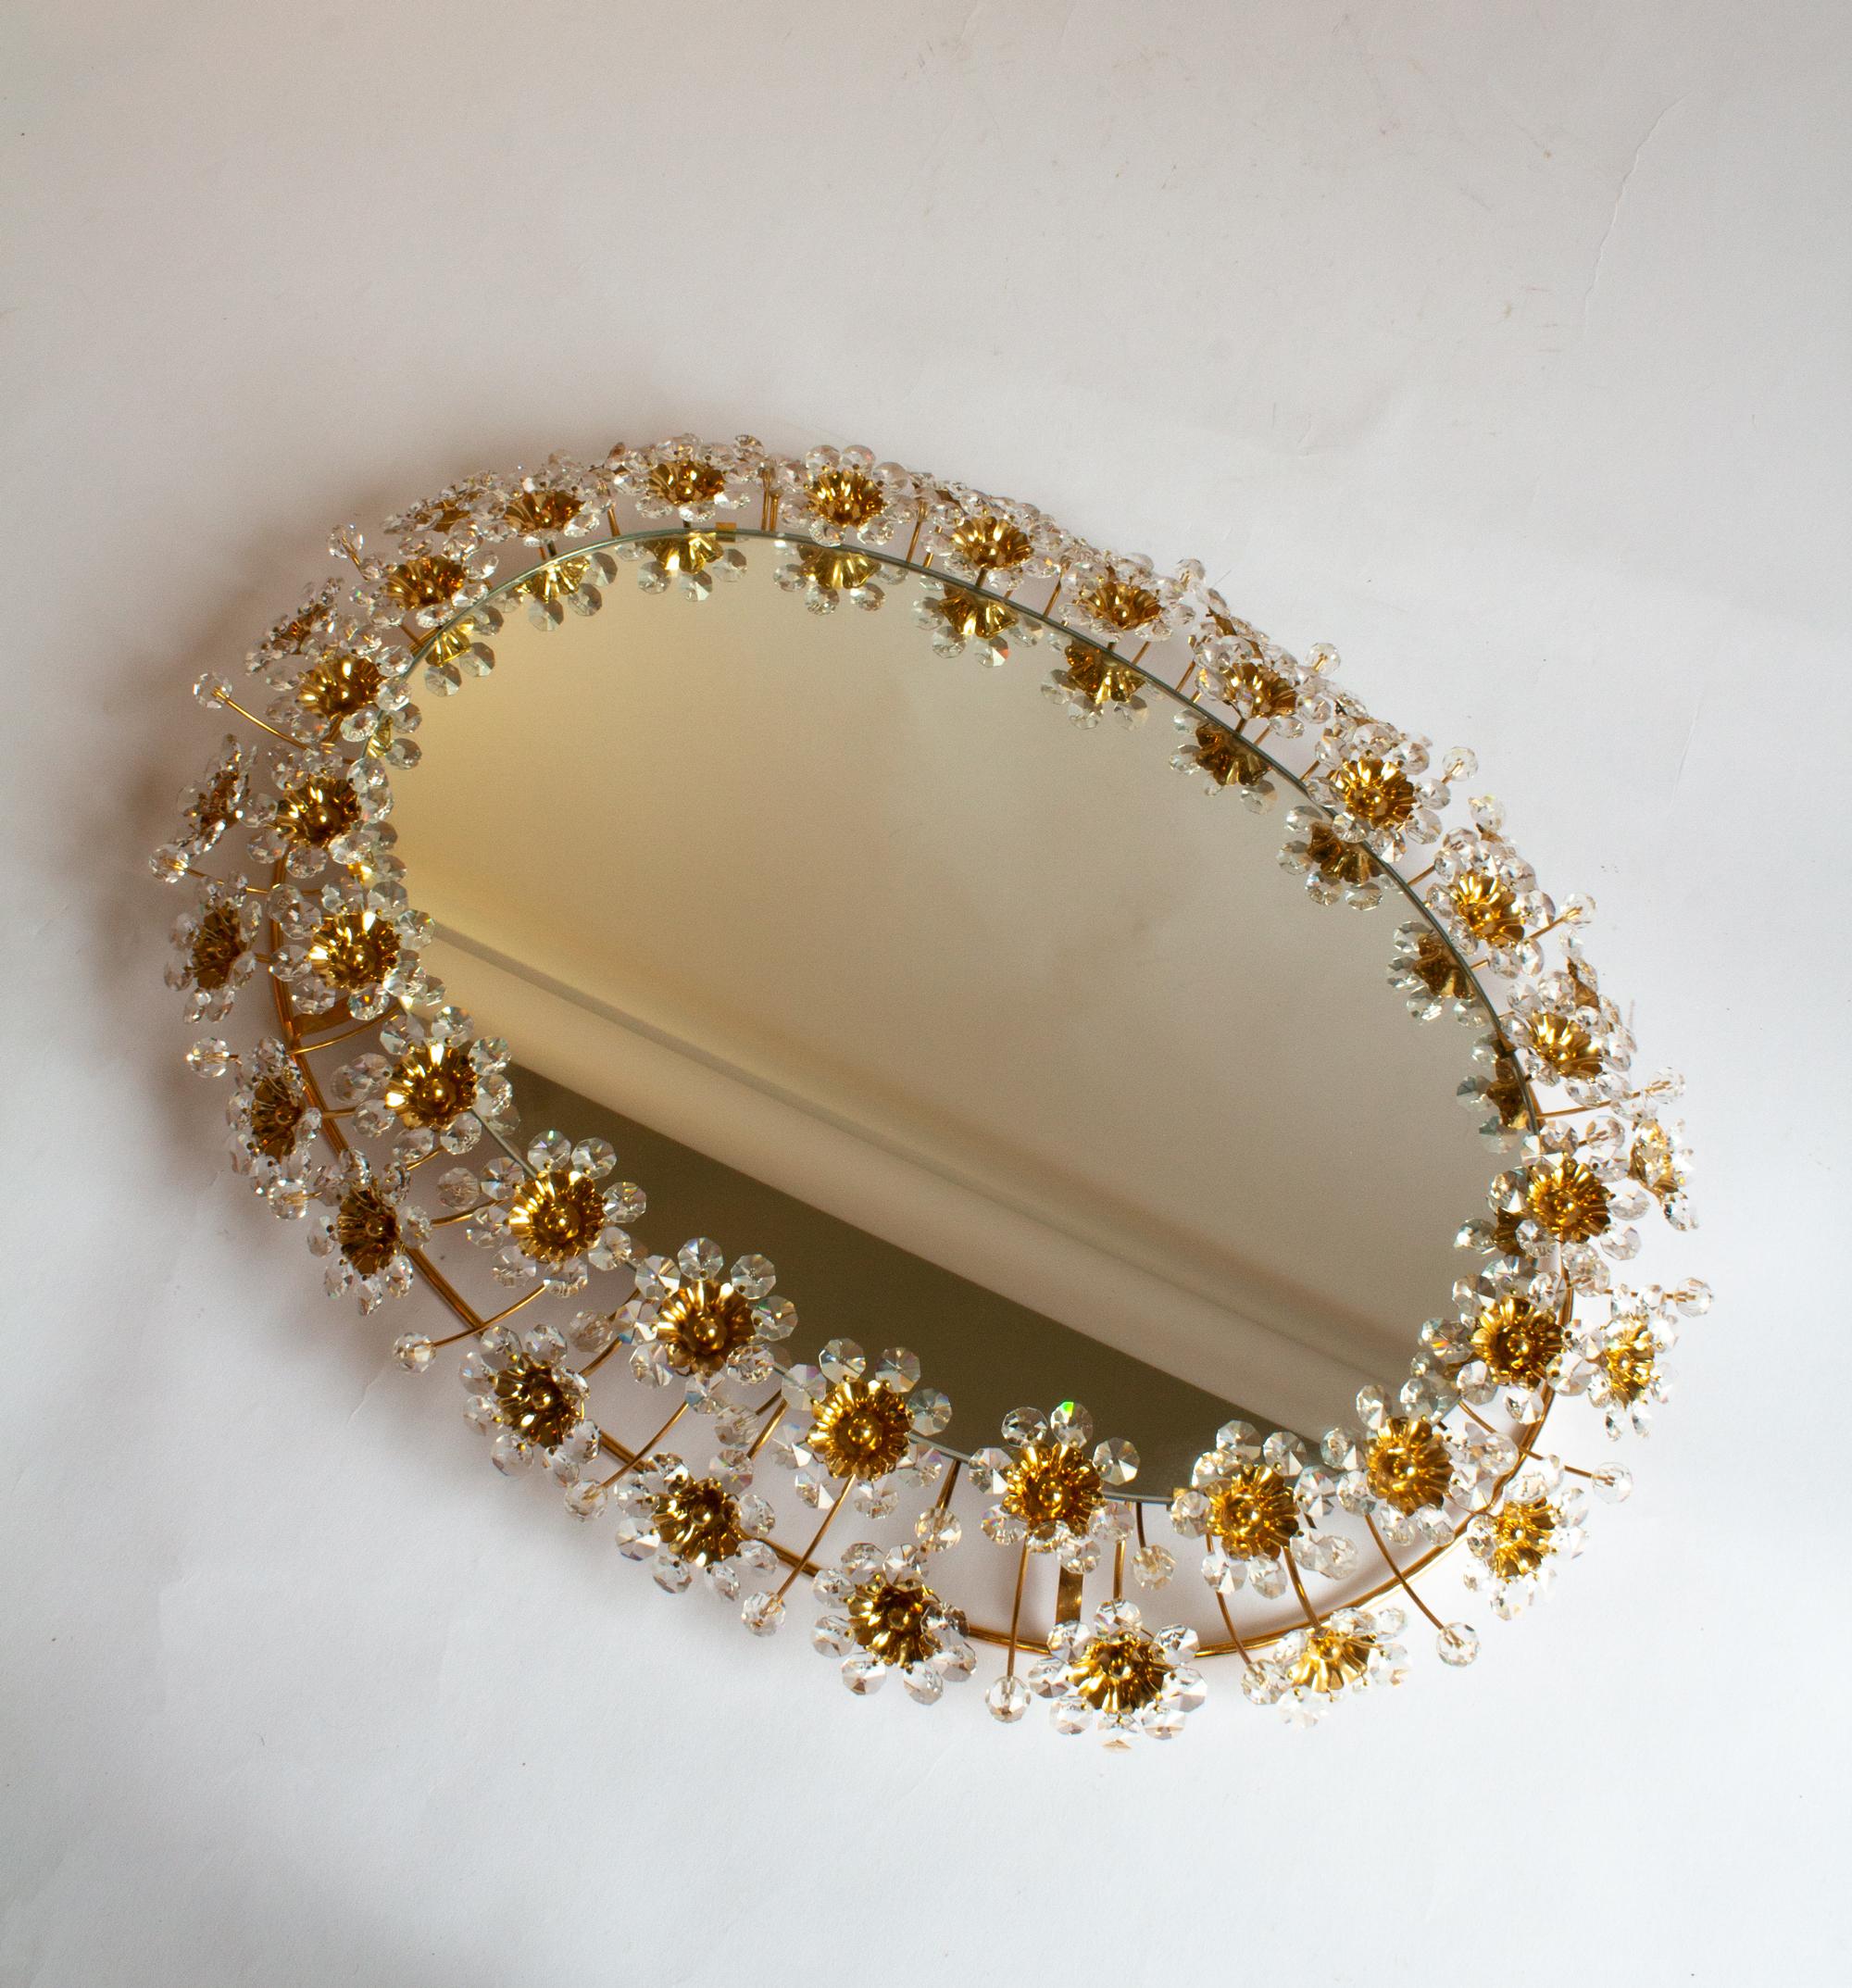 Ein Paar ovale Palwa-Spiegel mit Hintergrundbeleuchtung und Blumen aus Messing und Kristall.
Diese Vintage Blumenspiegel wurden von Palwa in Deutschland hergestellt. Der Spiegel wird von einem ovalen Rahmen aus Messing und einer Umrandung aus